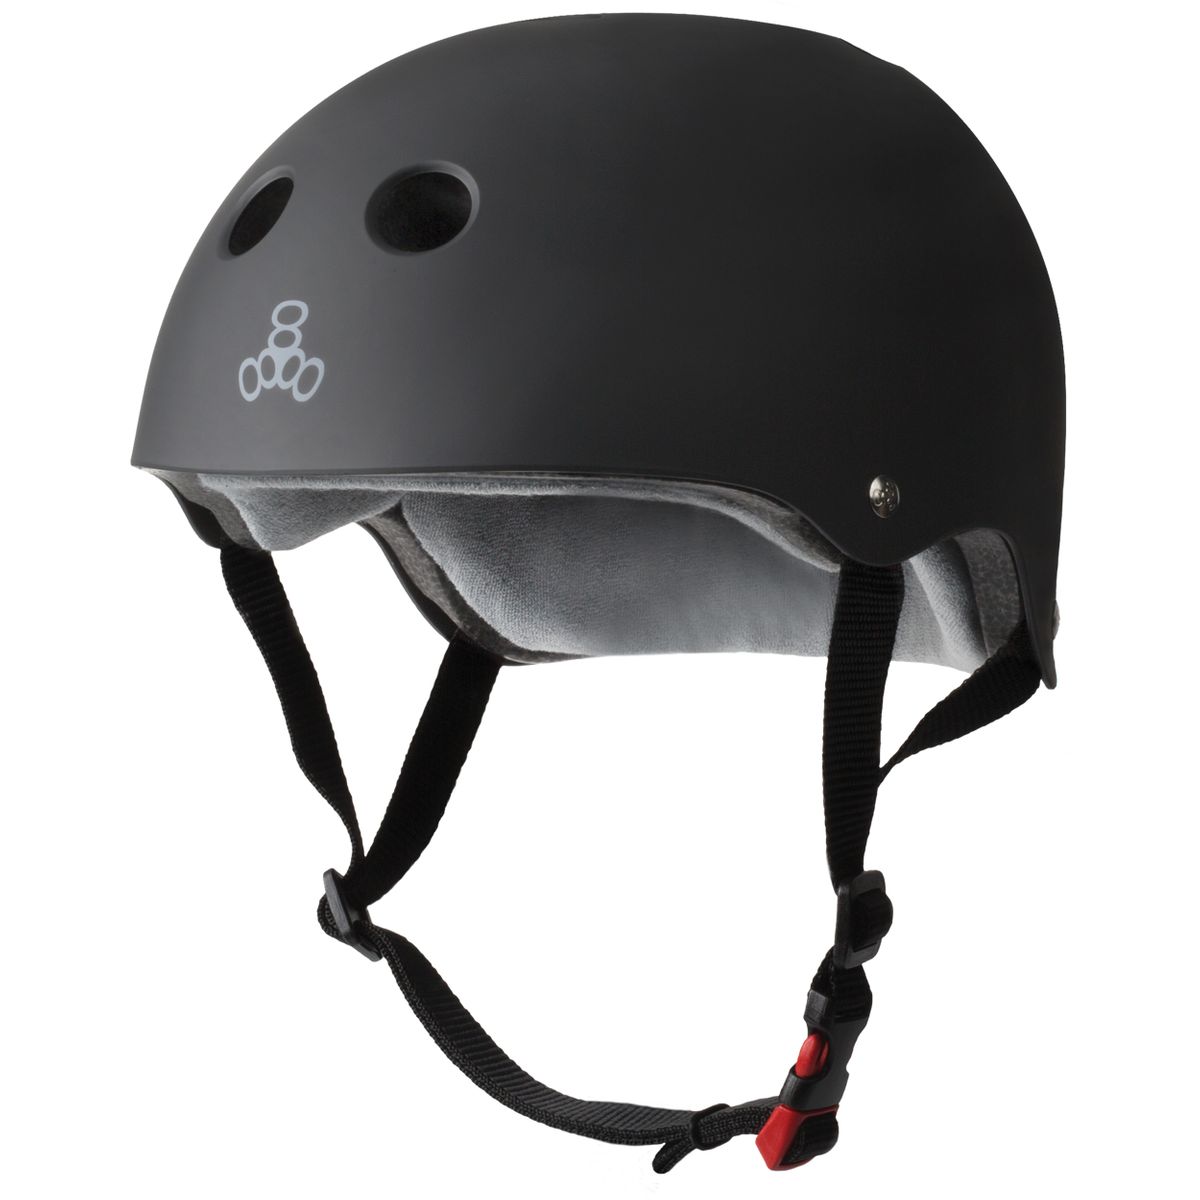 [RDY] [送料無料] トリプルエイト THE 公認スウェットヘルメット スケートボード BMX ローラースケート用 ブラックラバー L/X-Large [楽天海外通販] | Triple Eight THE Certified Sweatsaver Helmet for Skateboa